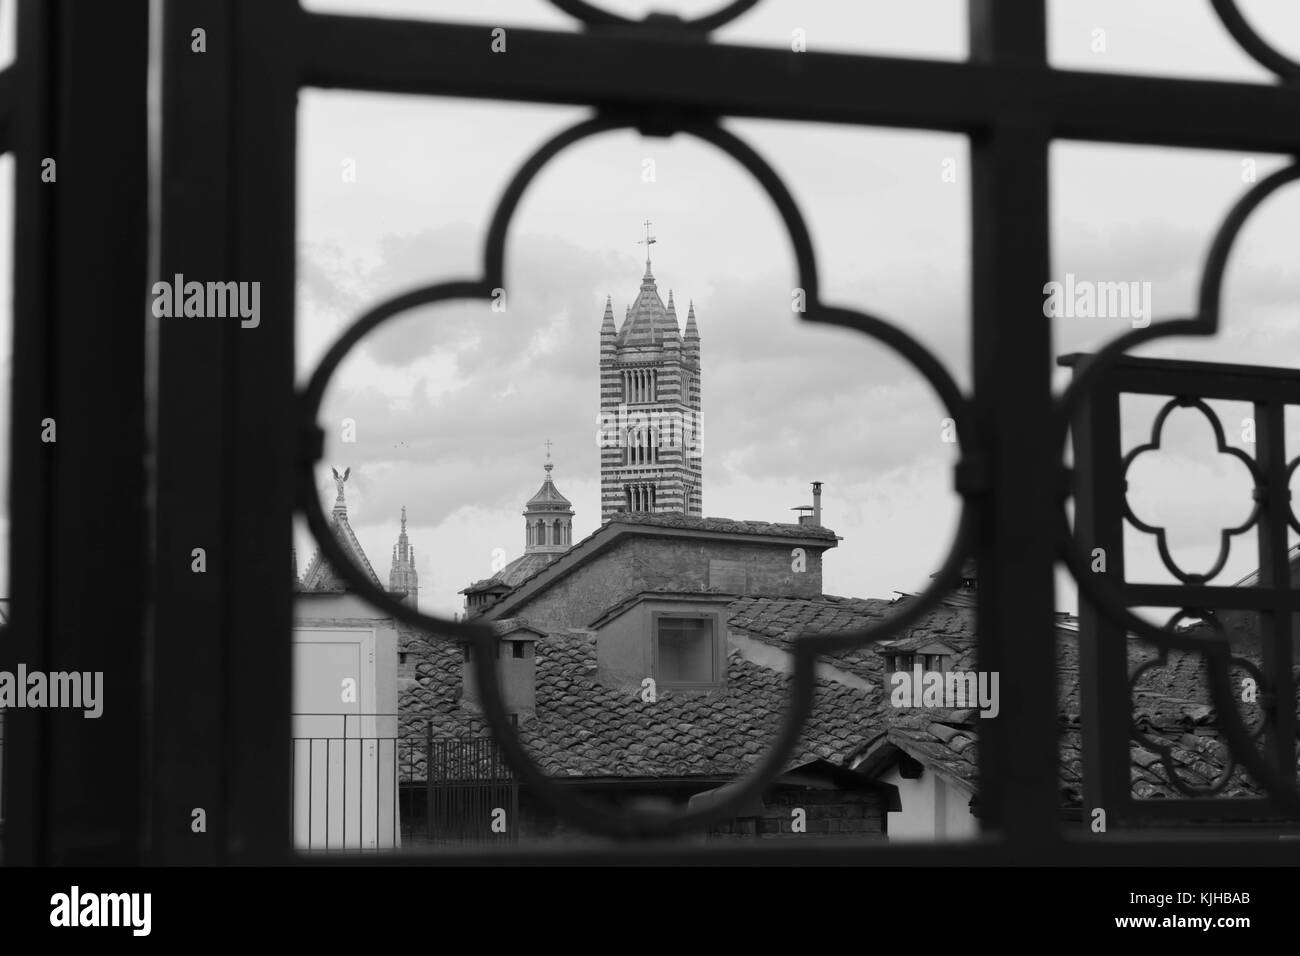 Vista de la torre de la catedral enmarcada por rejas. monocromo. de Siena, Italia. Foto de stock